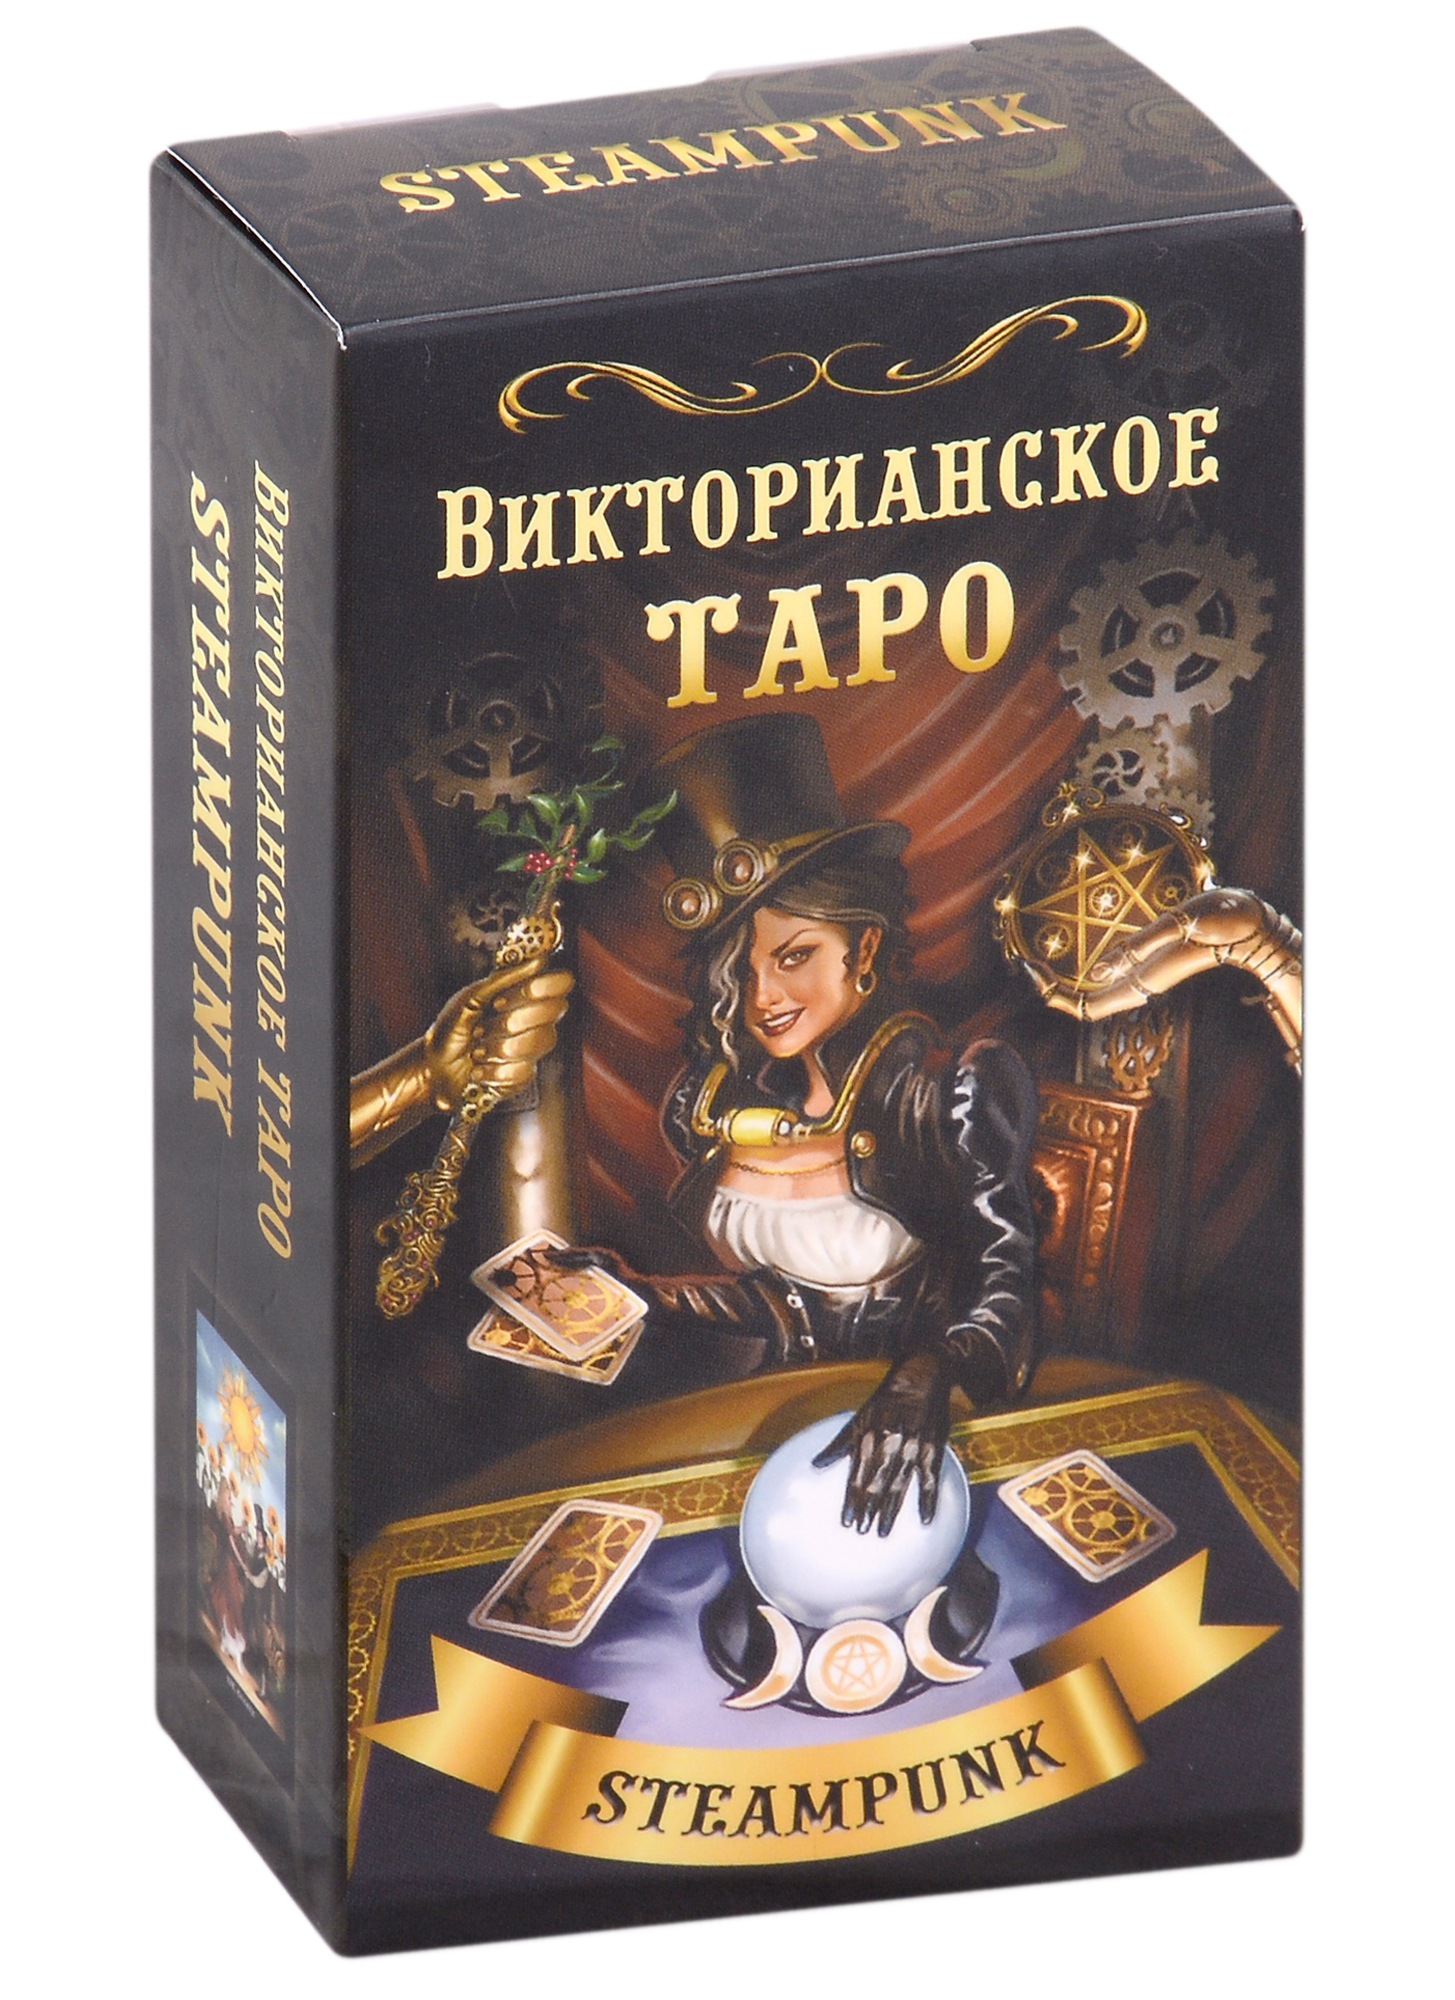 барбара мур ящерицы настольная игра карты таро предсказание гадания многопользовательская игра Мур Барбара Викторианское Таро (78 карт)